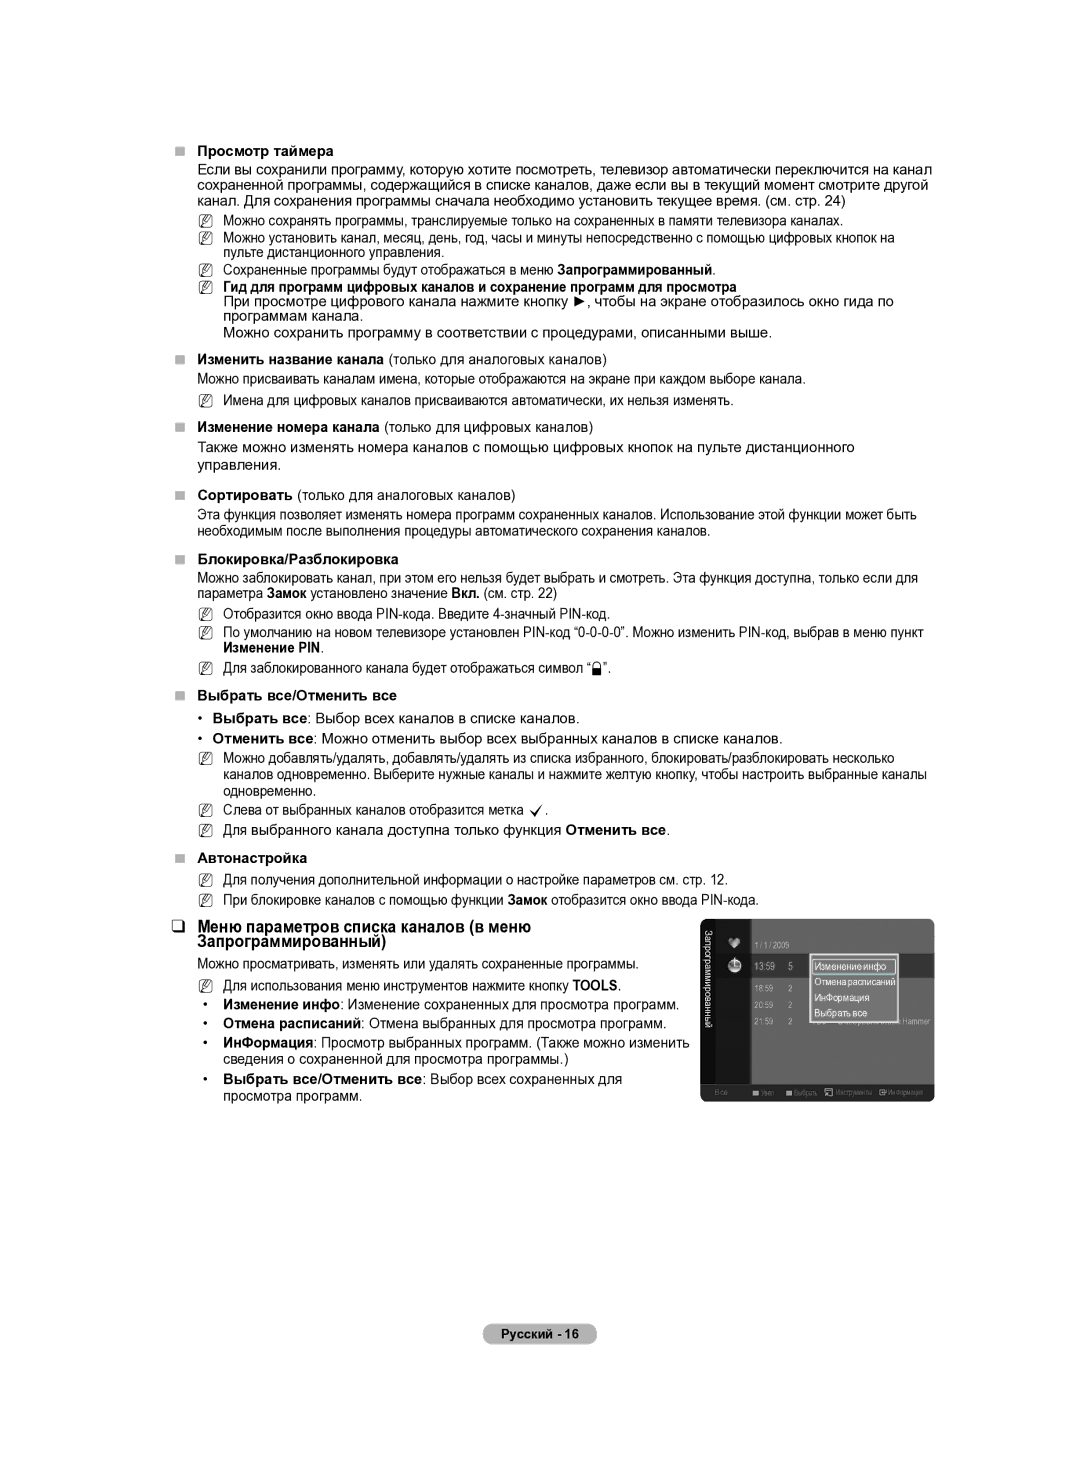 Samsung PS50B430P manual Меню параметров списка каналов в меню Запрограммированный,  Просмотр таймера,  Автонастройка 